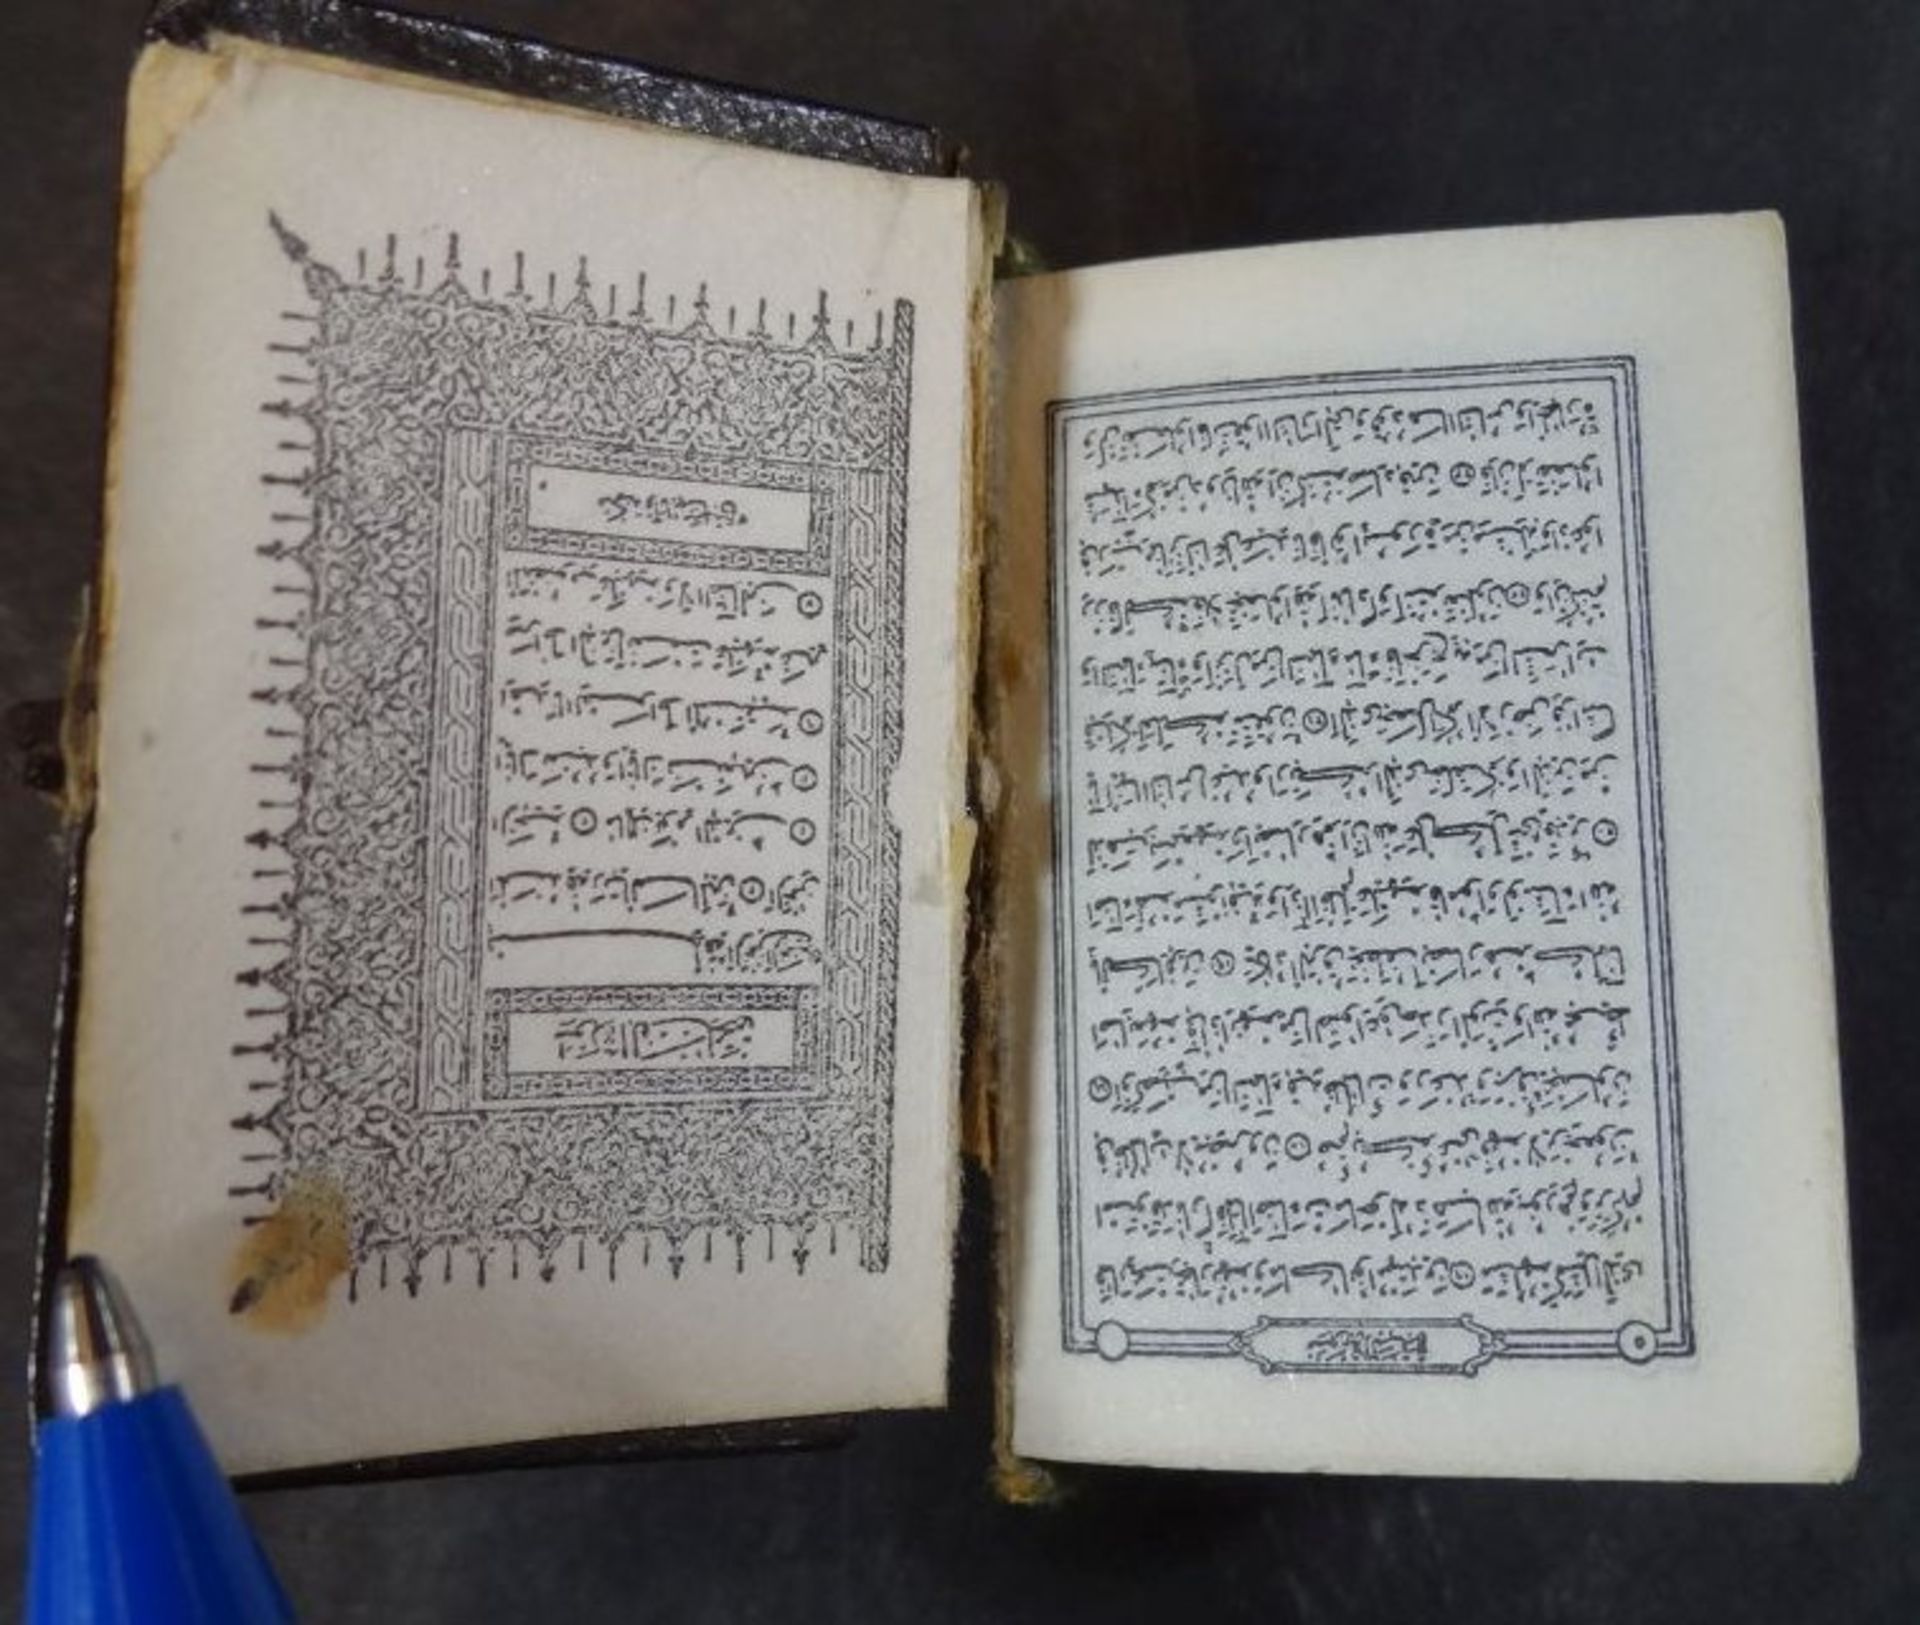 Mini-Koran, Ledereinband beschädigt, Altersspuren, 3,6x2,5 cm - Image 3 of 4